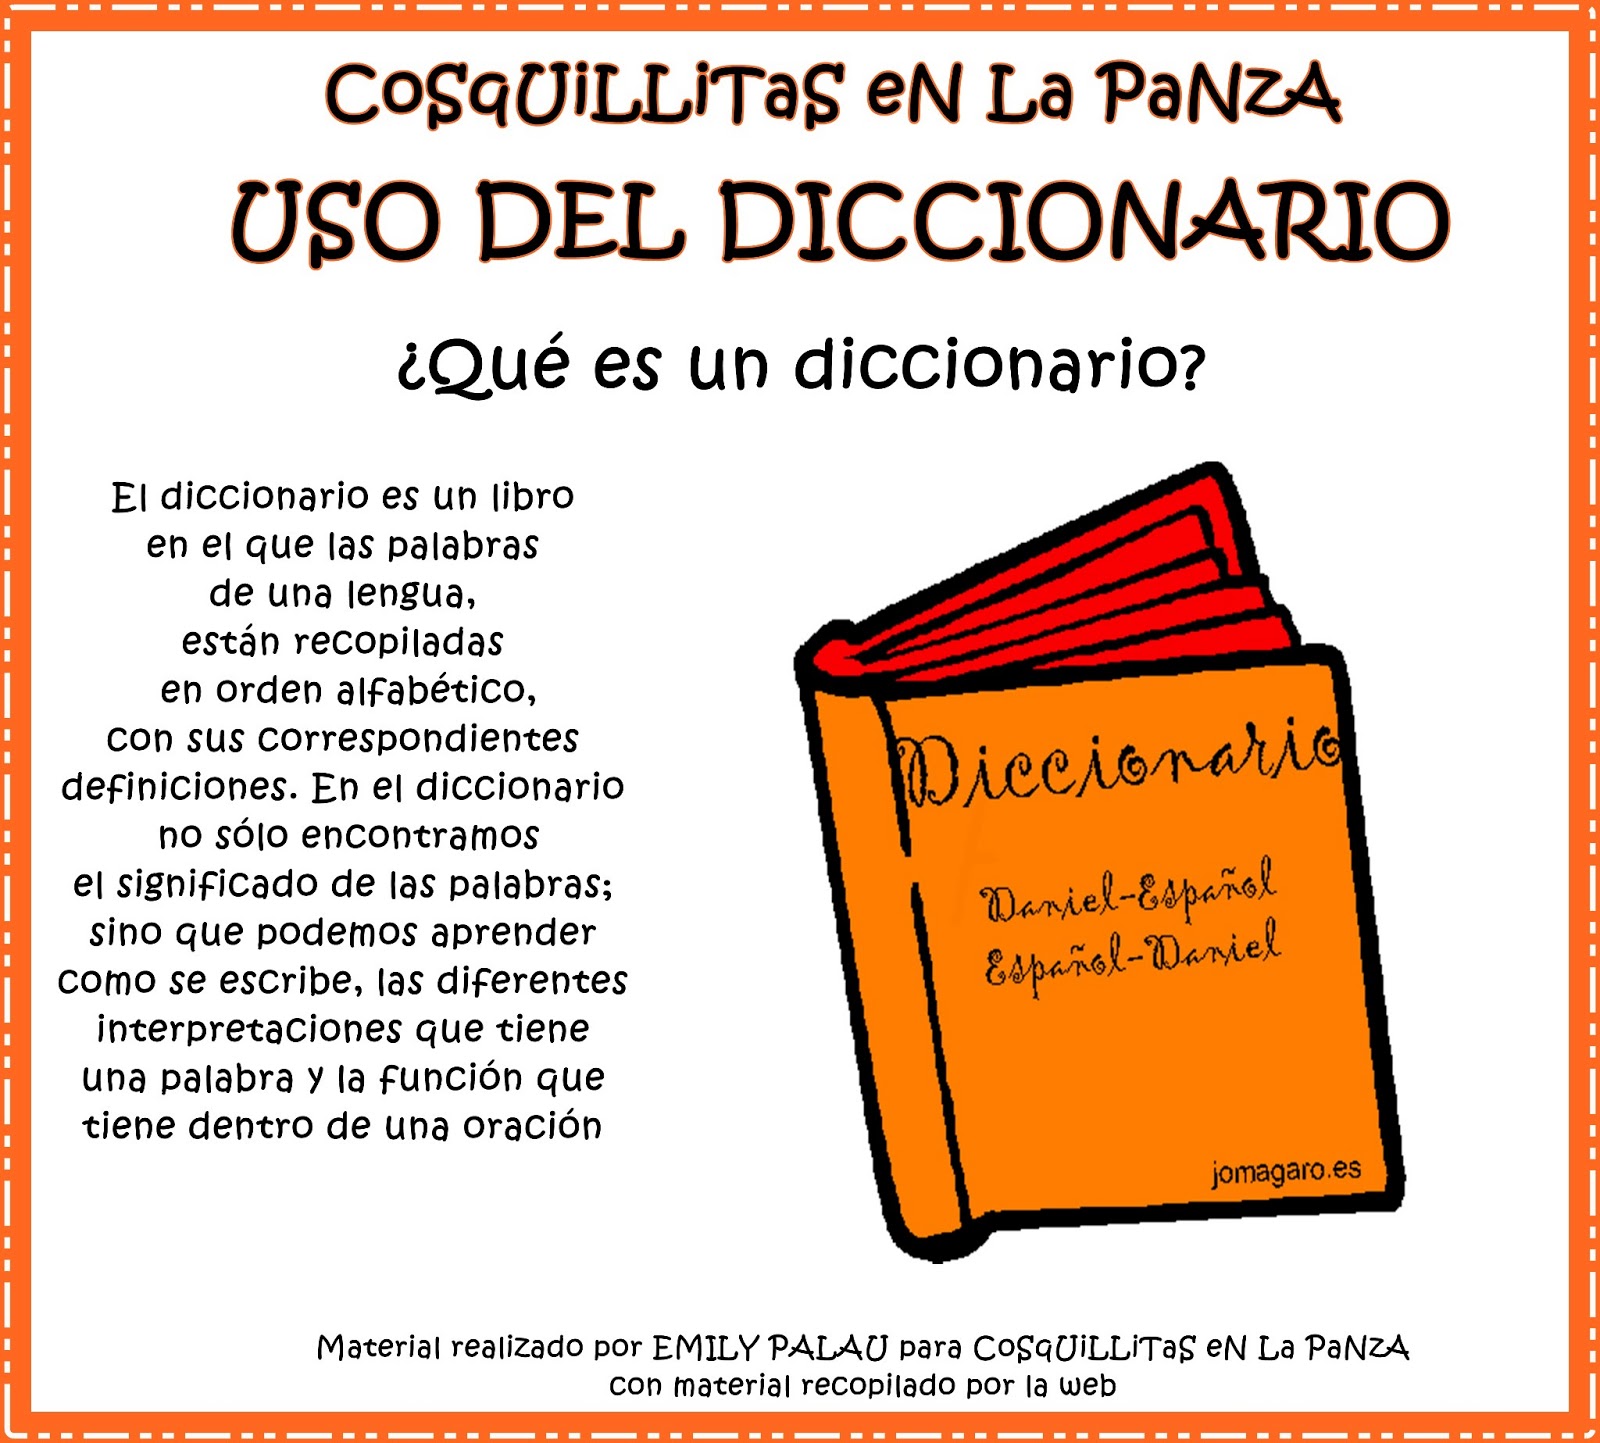 Batiscafo (Diccionario visual) - Didactalia: material educativo